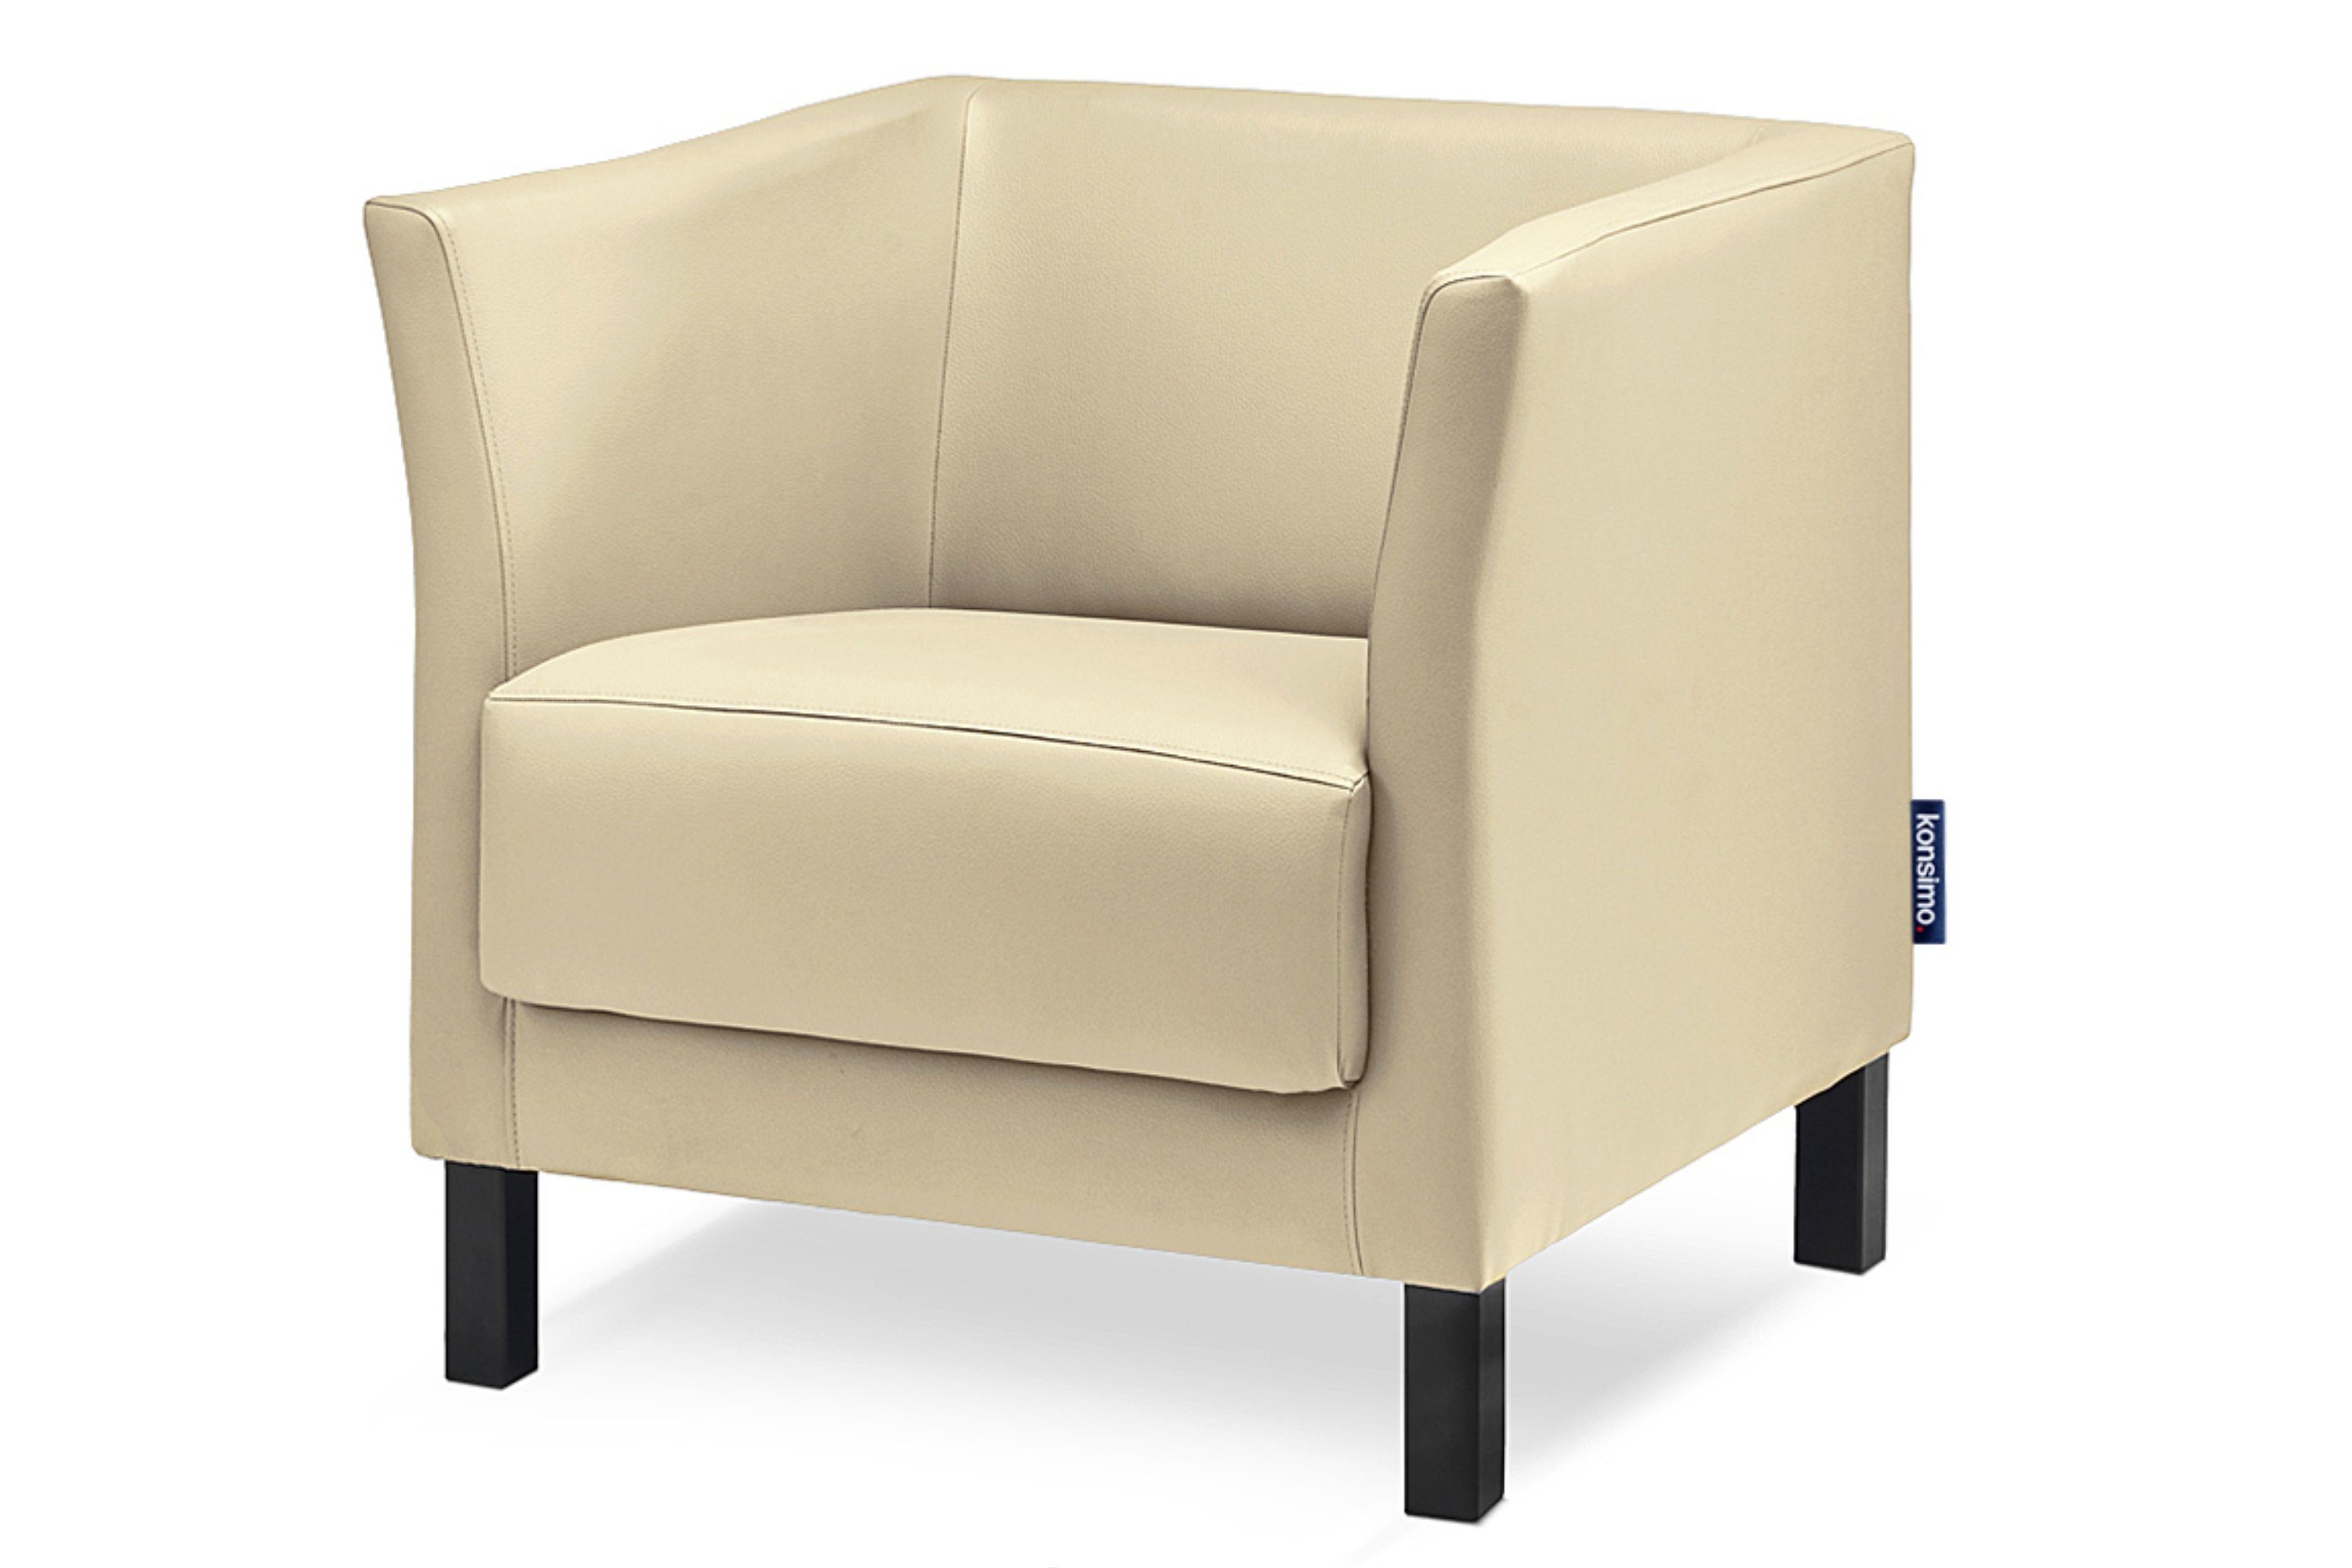 Konsimo Sessel | hohe Kunstleder creme Creme Sessel, ESPECTO | Rückenlehne, hohe Massivholzbeine, creme und Sitzfläche weiche